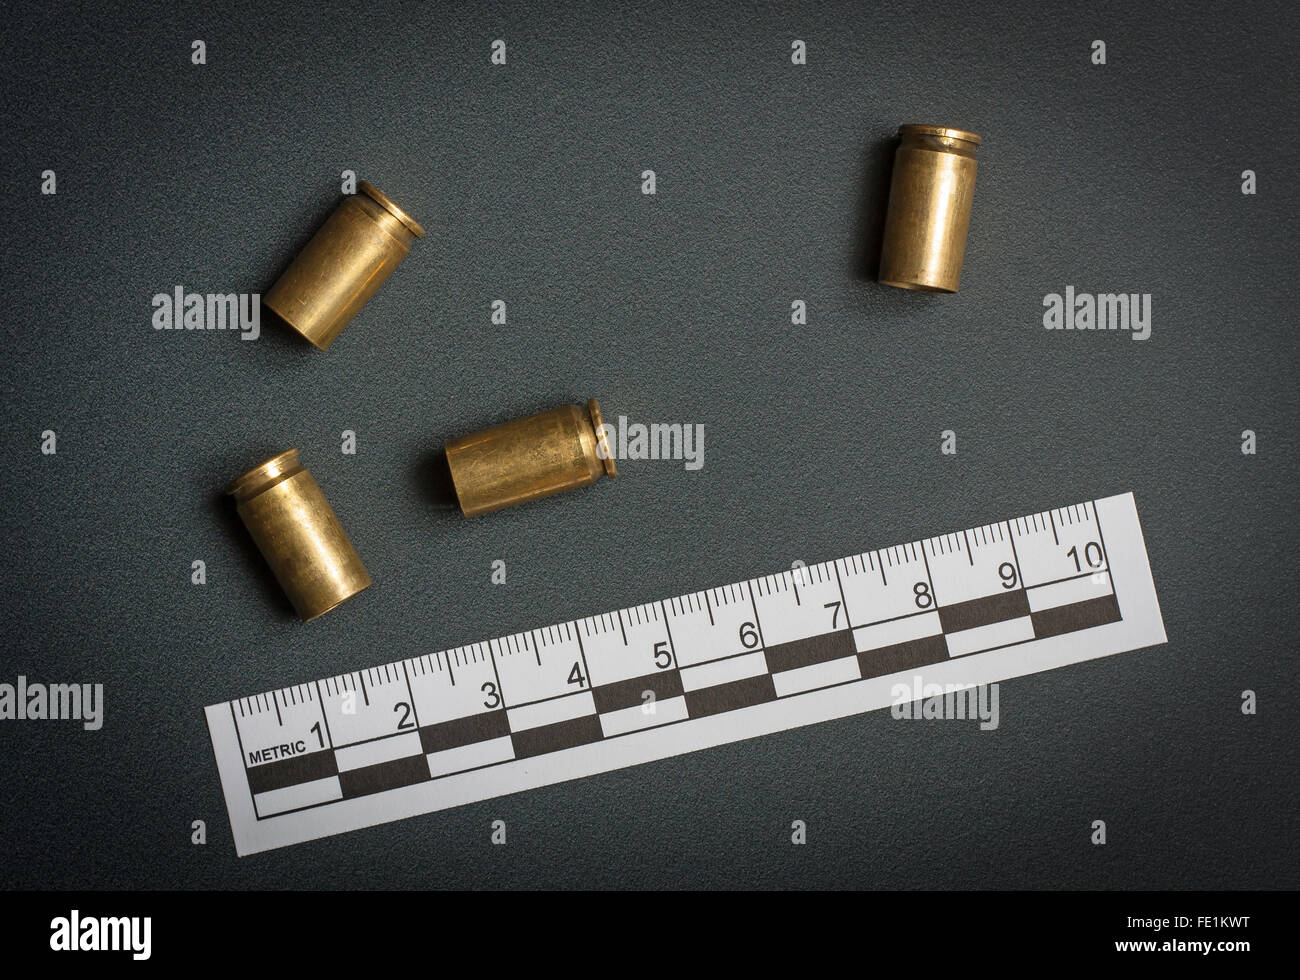 La escena del crimen, vacía las balas disparadas tirados en el suelo Foto de stock